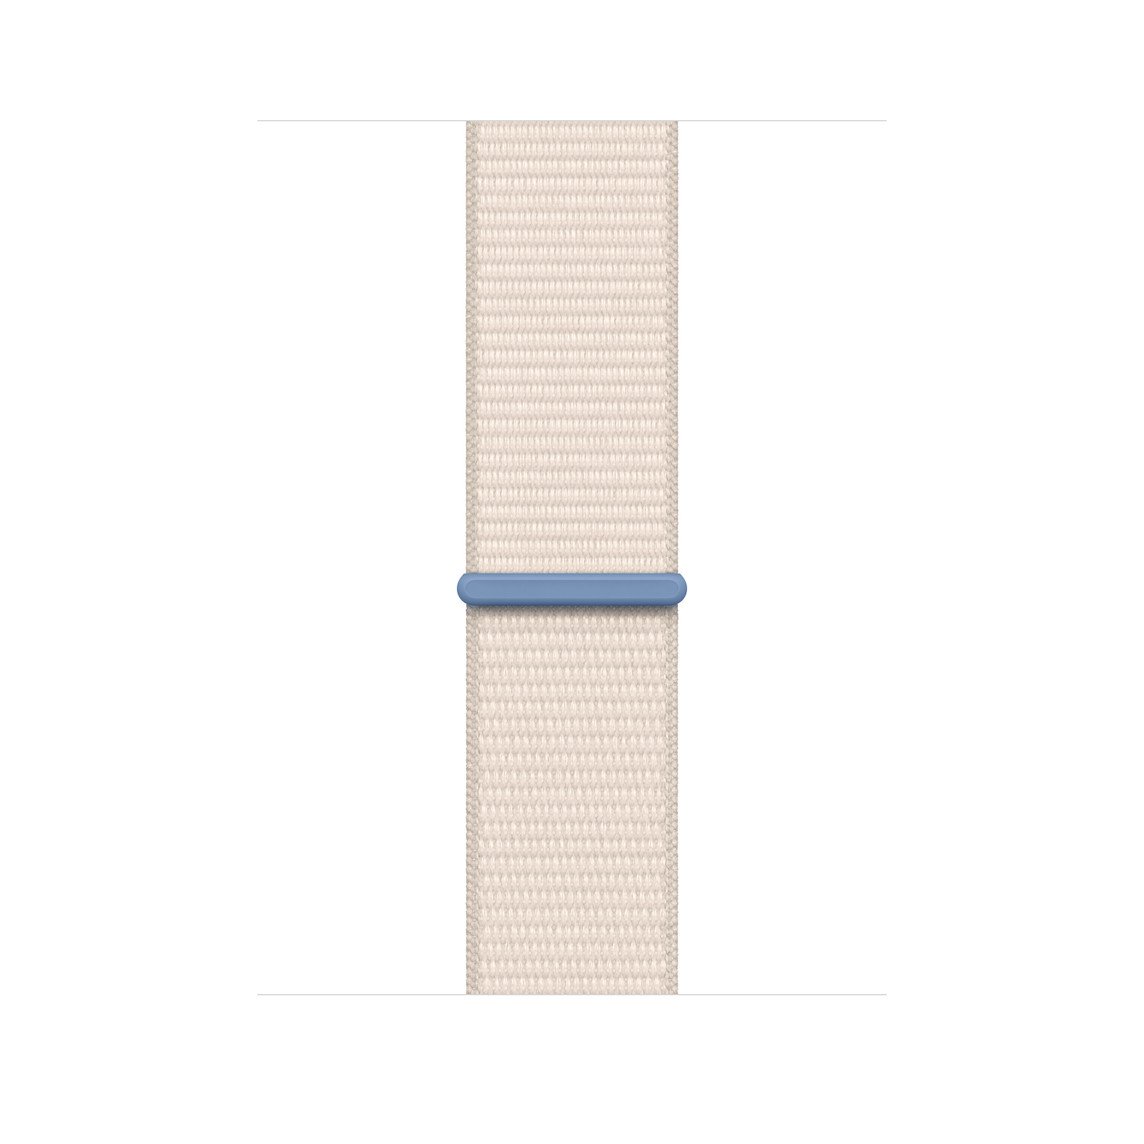 Correa loop deportiva blanco estelar, hecha de nylon tejido color crema, con cierre adhesivo ajustable